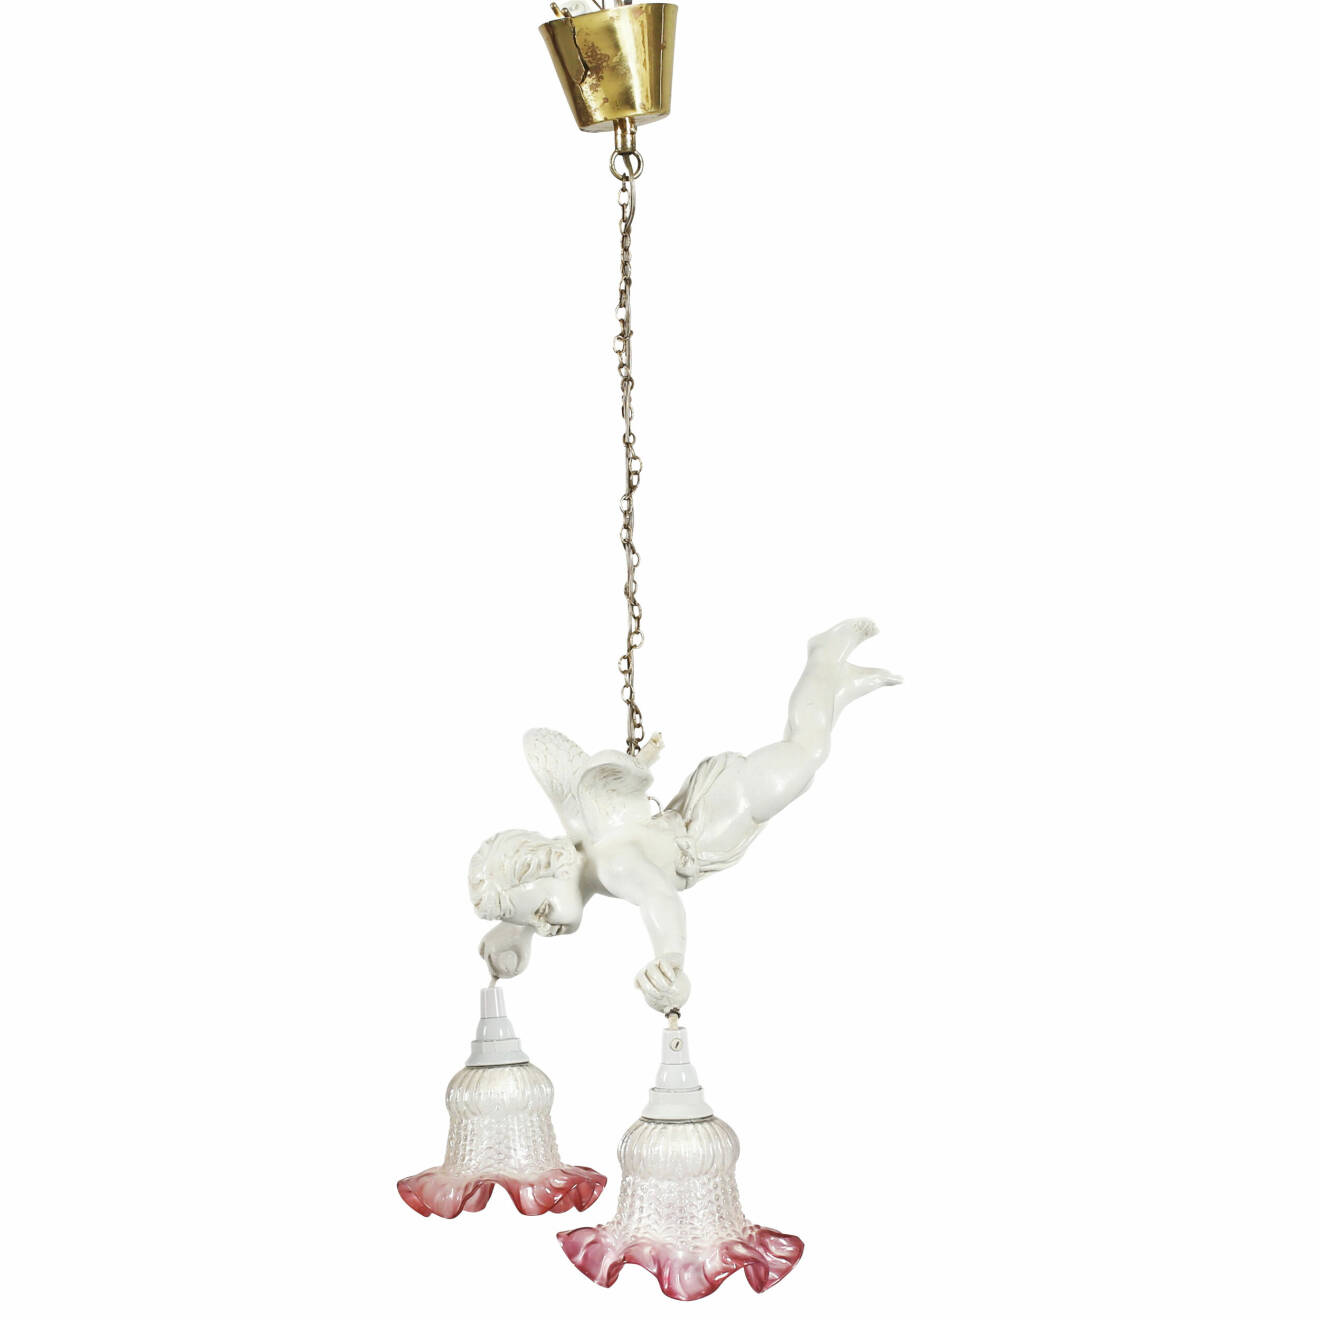 Taklampa i gips och glas, hängande ängel håller två lampor i händerna.